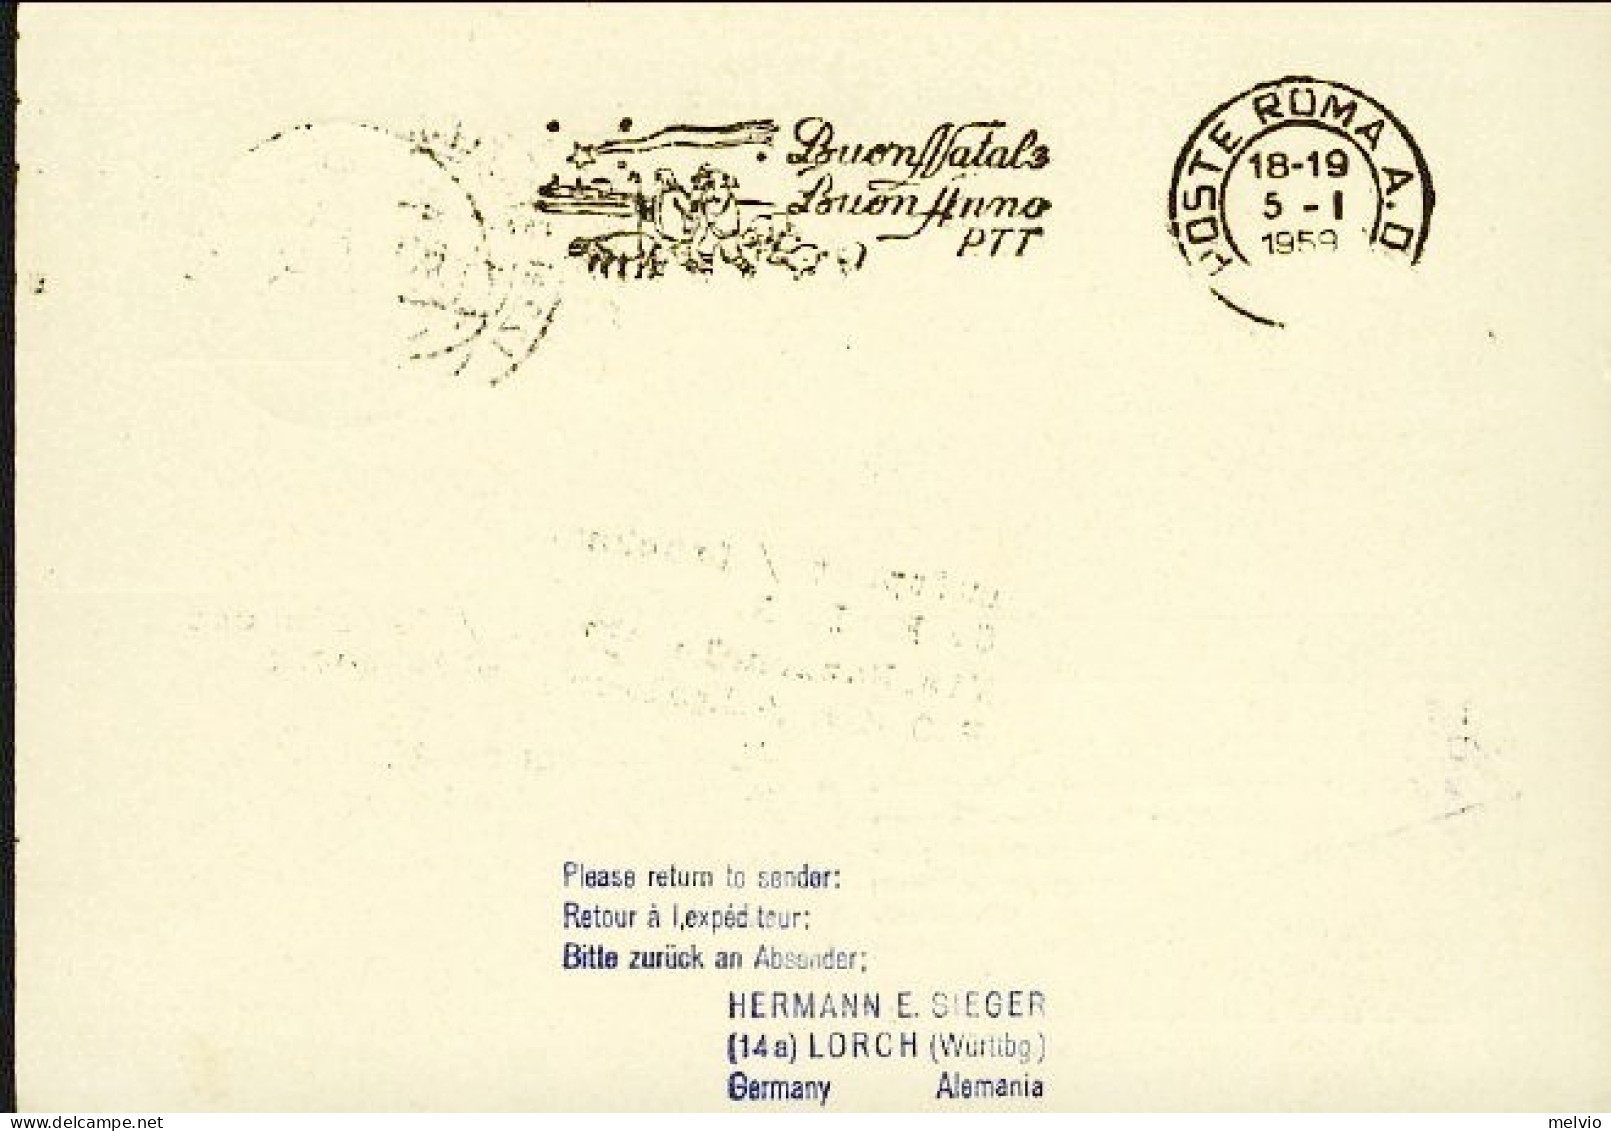 1959-Germania Intero Postale Illustrato 10pf.con Affrancatura Aggiunta Volo Luft - Storia Postale